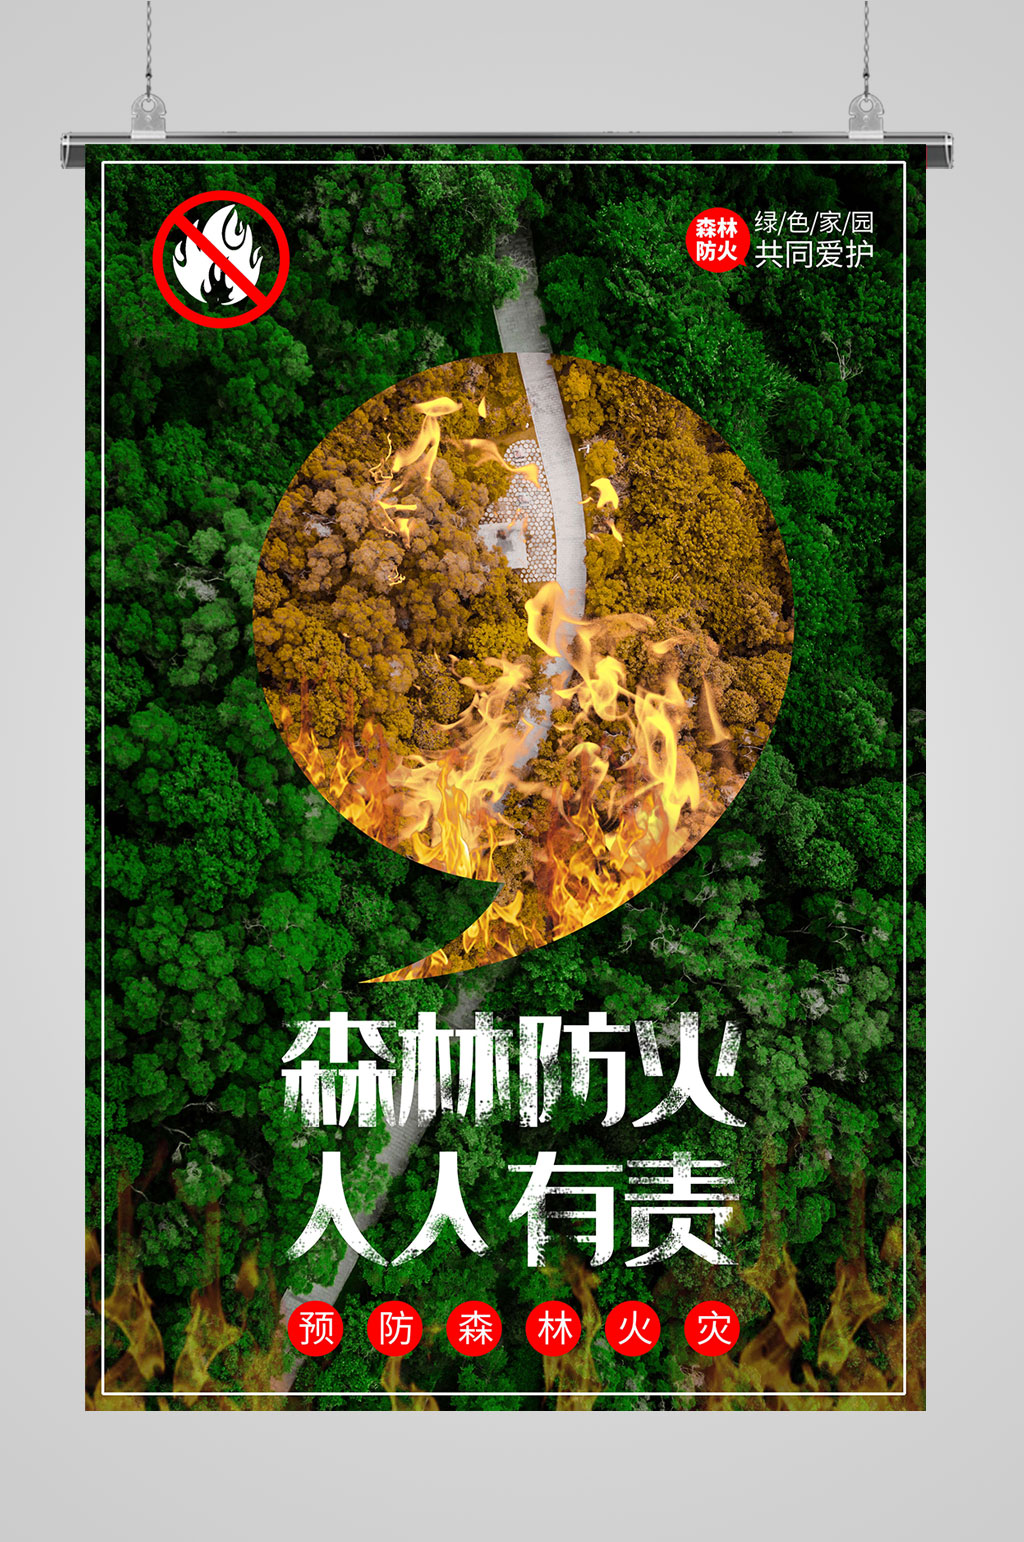 森林防火宣传海报立即下载森林防火保护动物立即下载防止火灾消除隐患